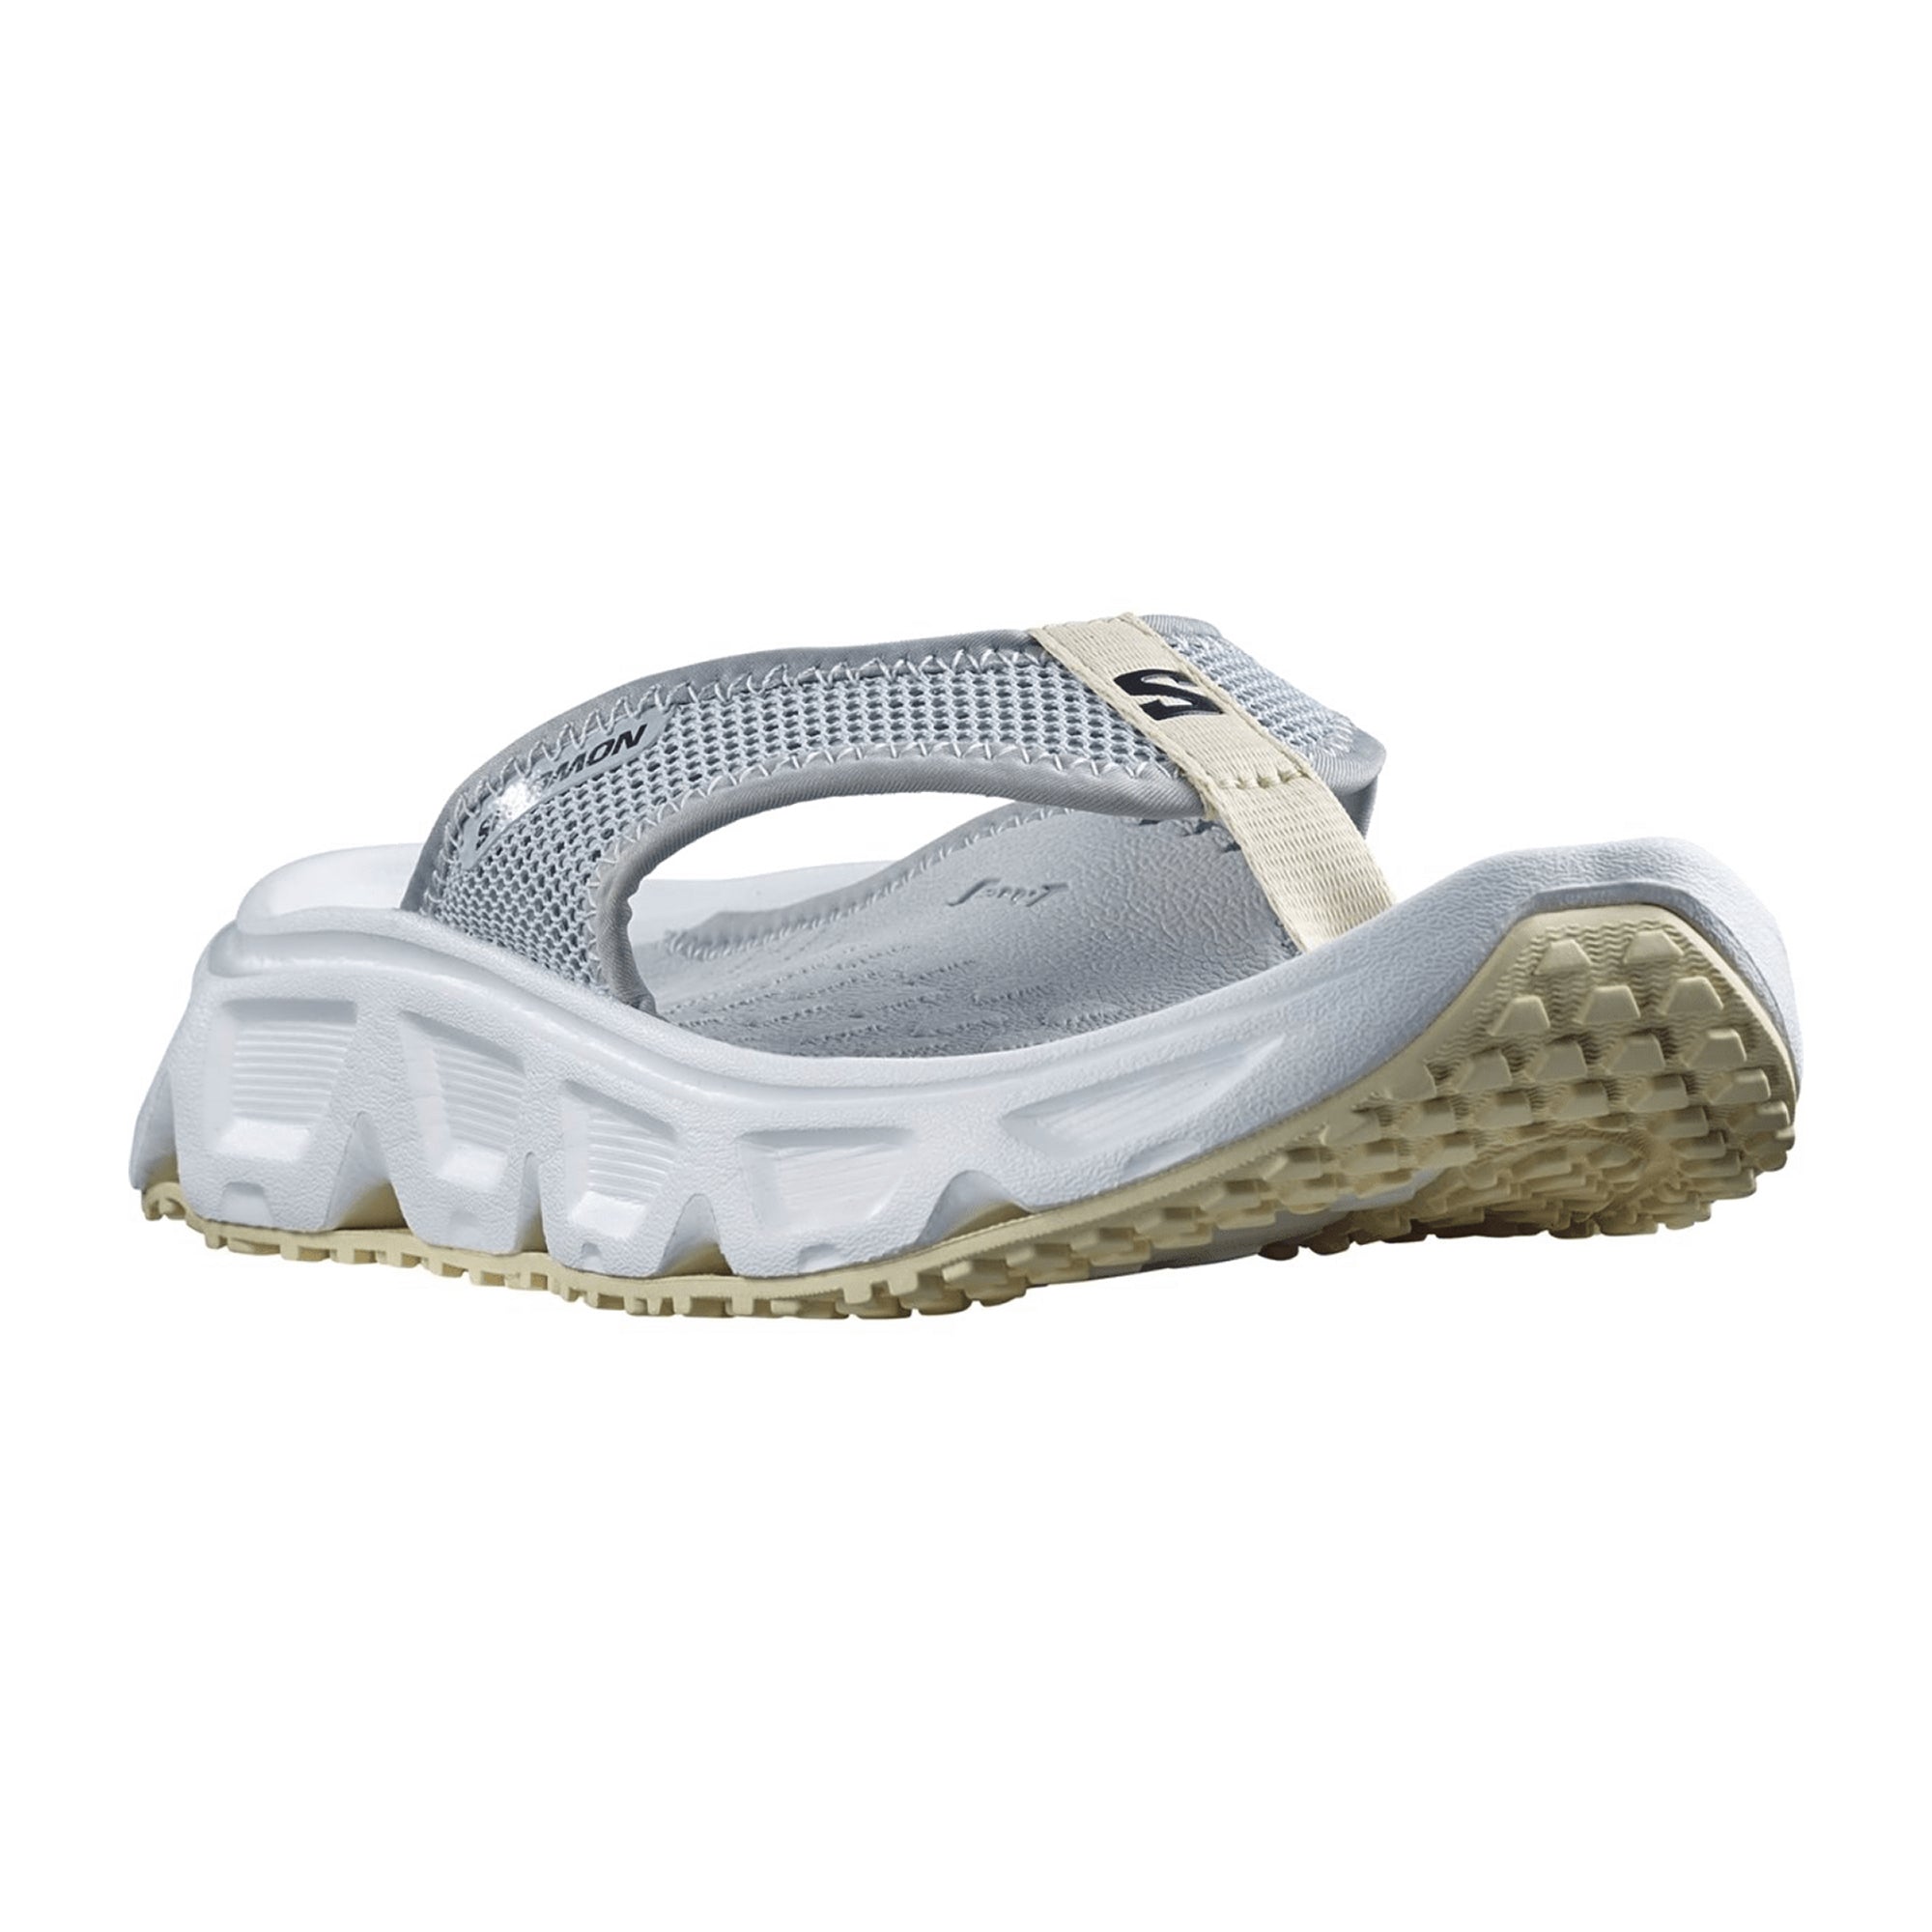 Salomon shoes REELAX BREAK 6.0 W Blac for women, gray